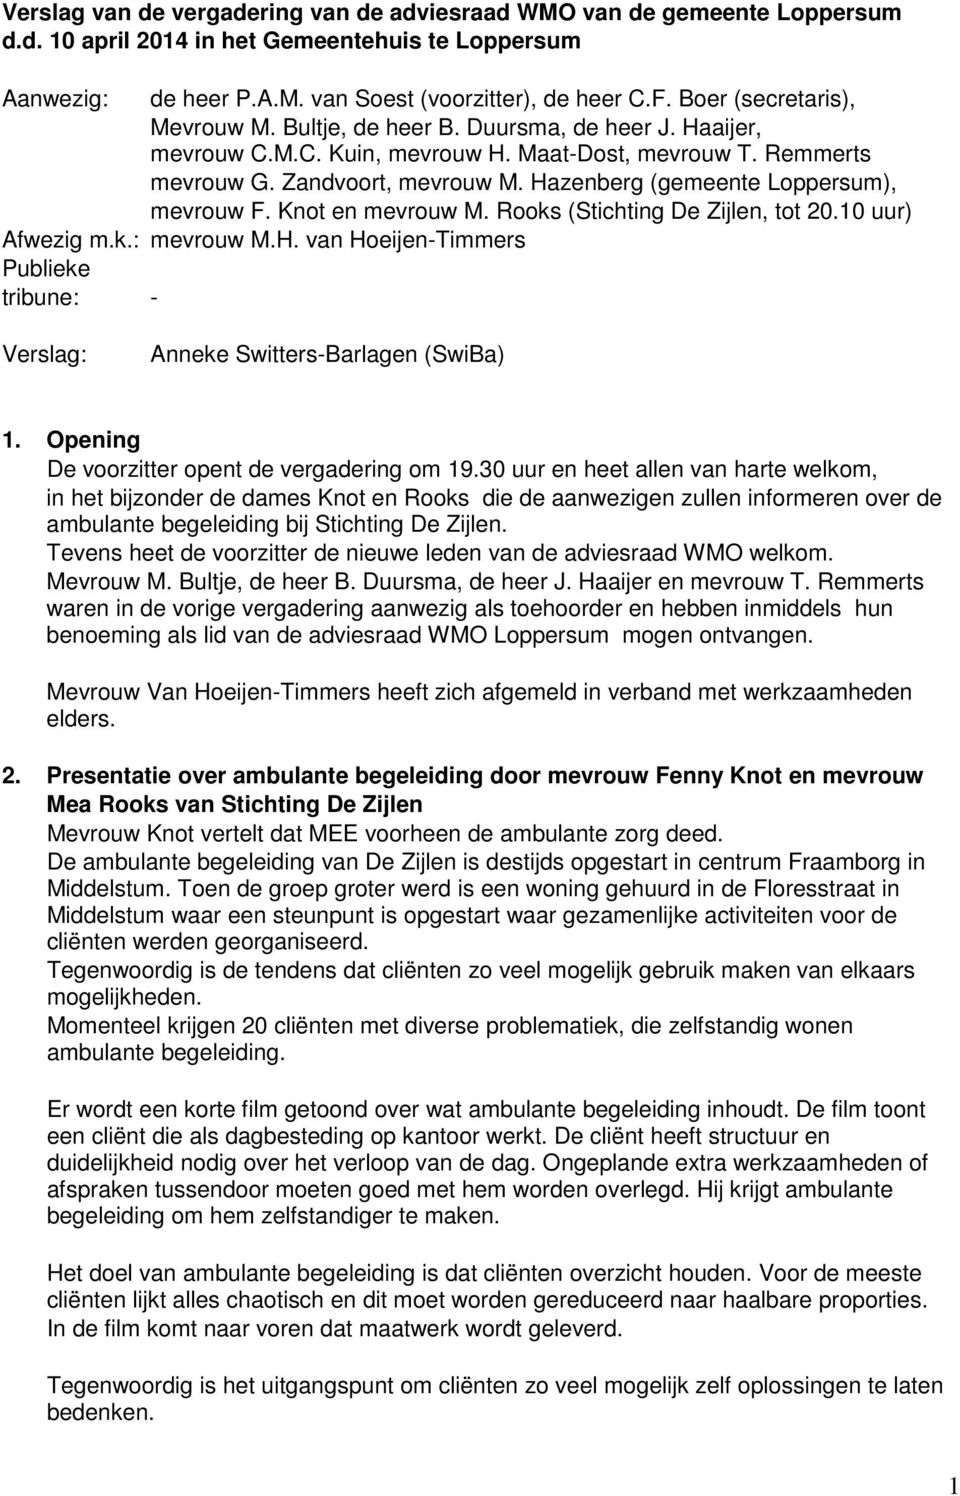 Hazenberg (gemeente Loppersum), mevrouw F. Knot en mevrouw M. Rooks (Stichting De Zijlen, tot 20.10 uur) Afwezig m.k.: mevrouw M.H. van Hoeijen-Timmers Publieke tribune: - Verslag: Anneke Switters-Barlagen (SwiBa) 1.